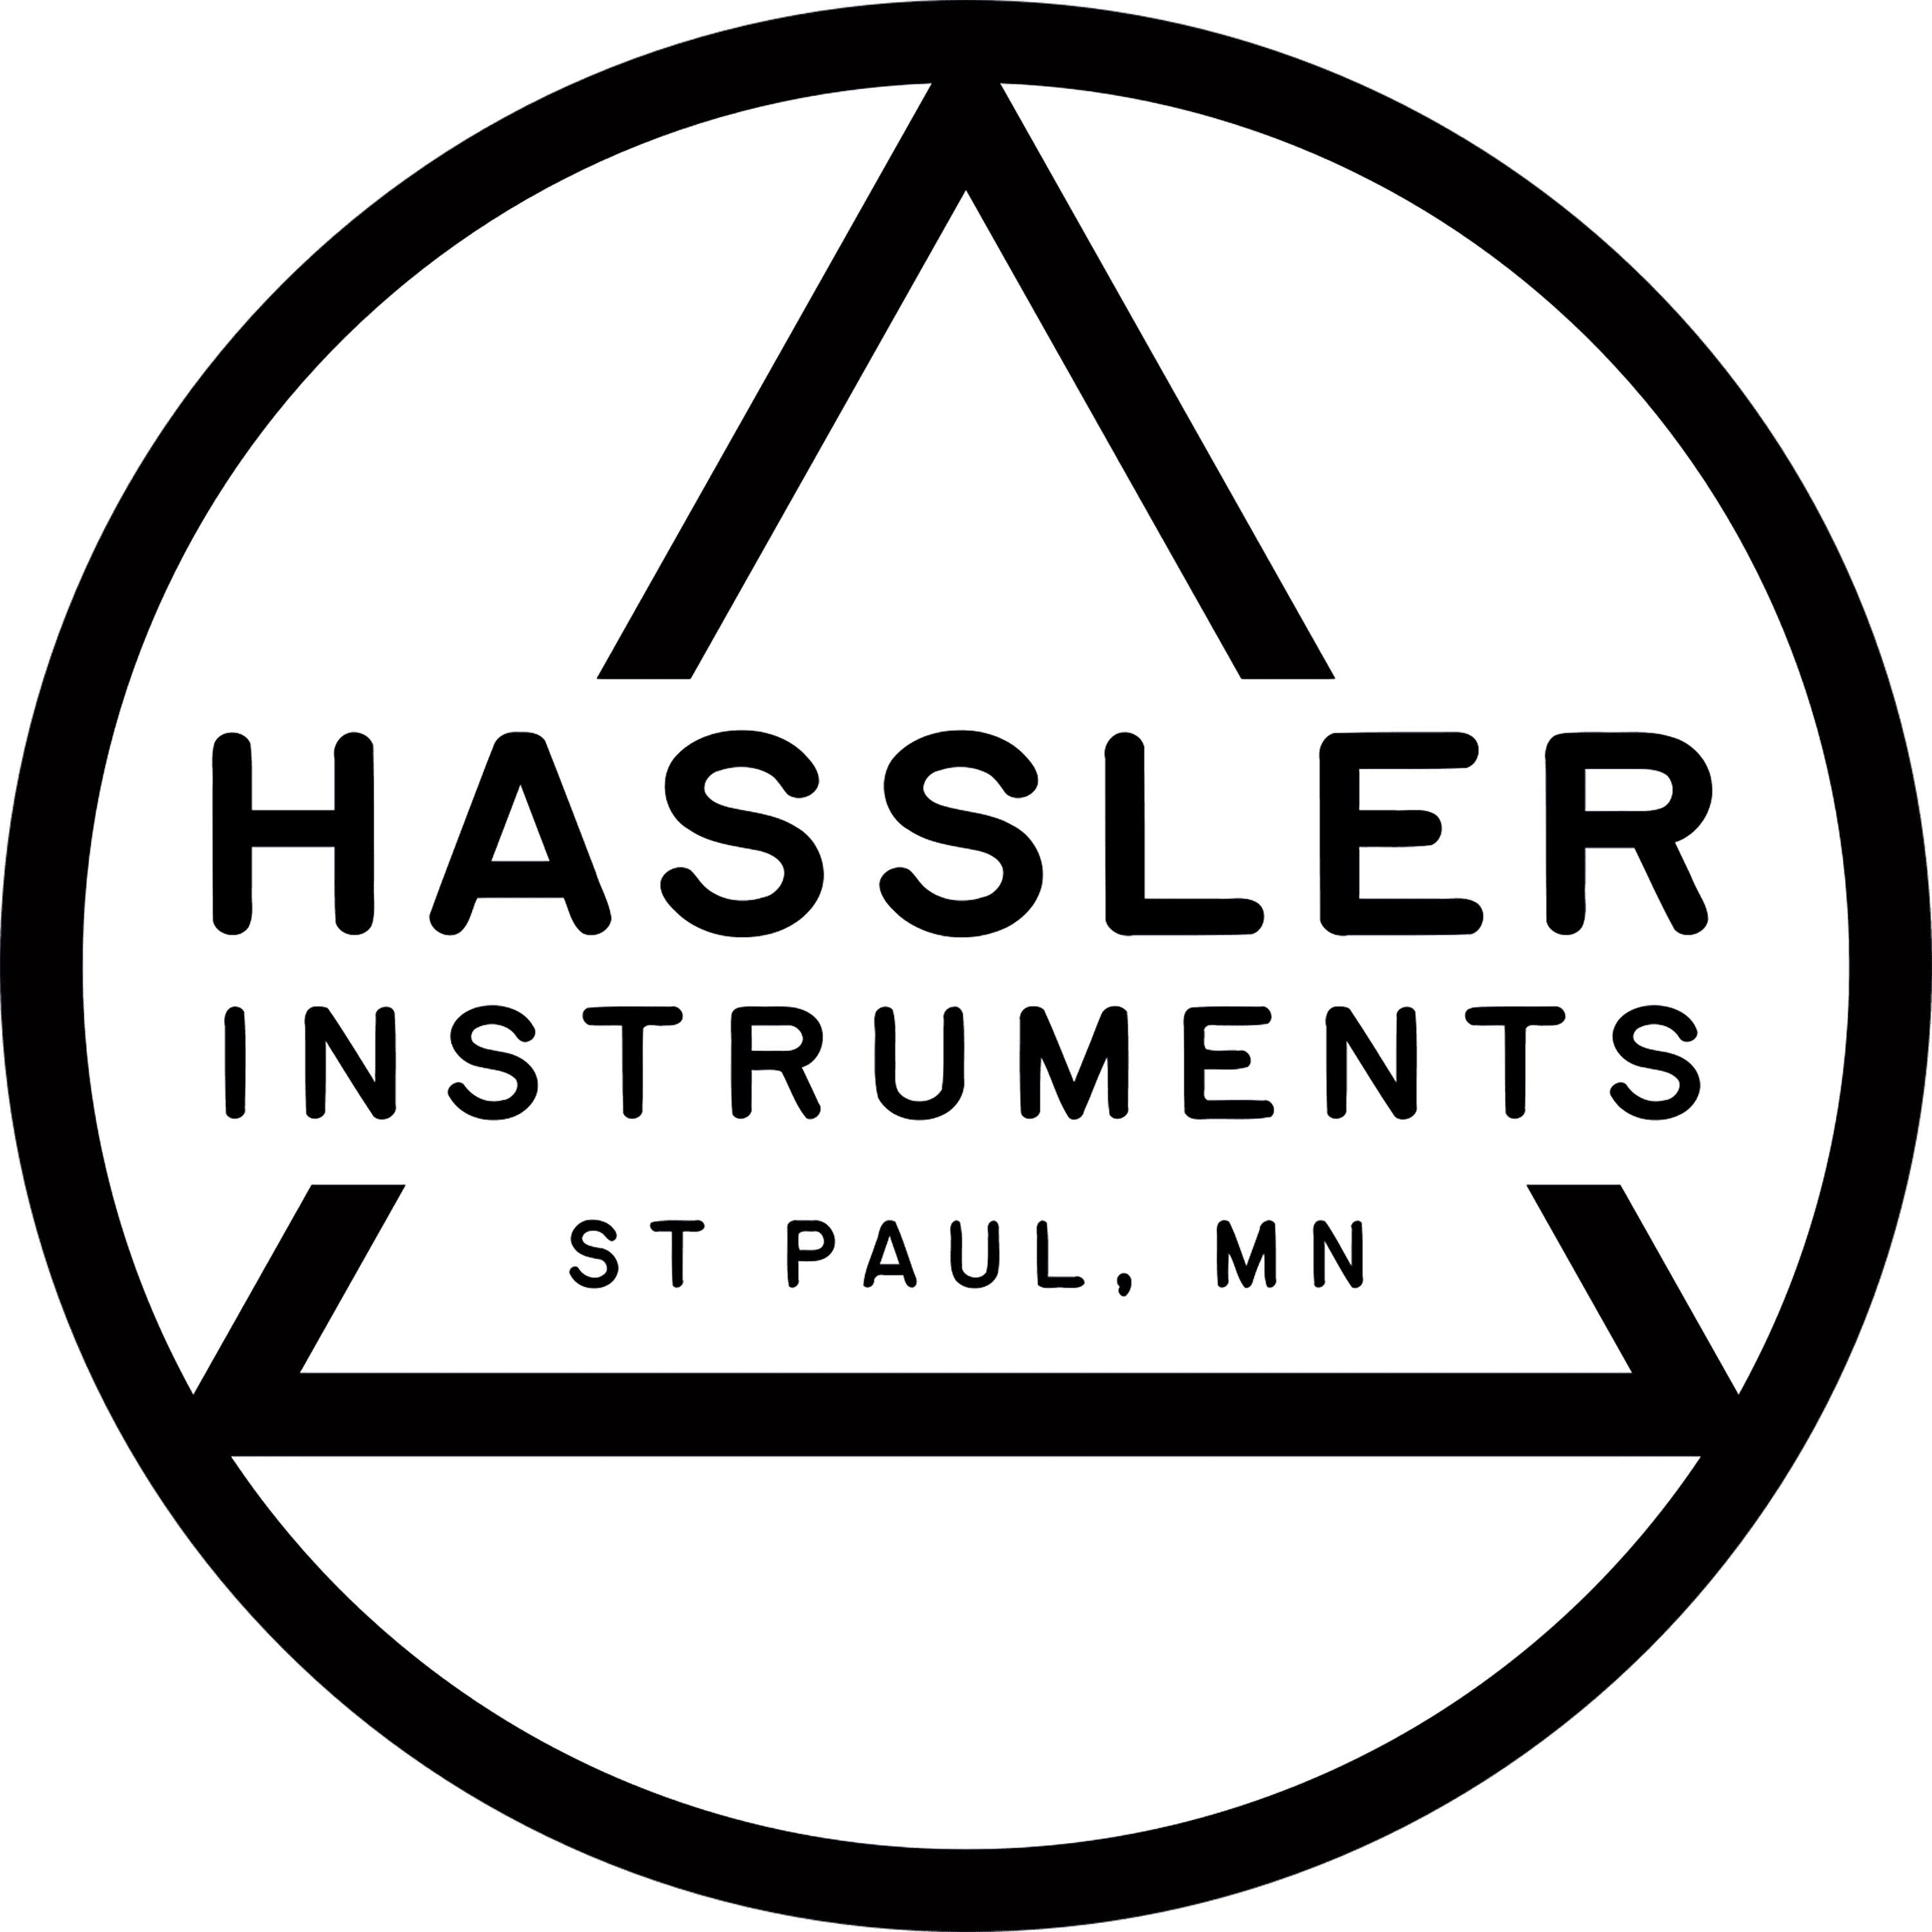 Hassler Instruments